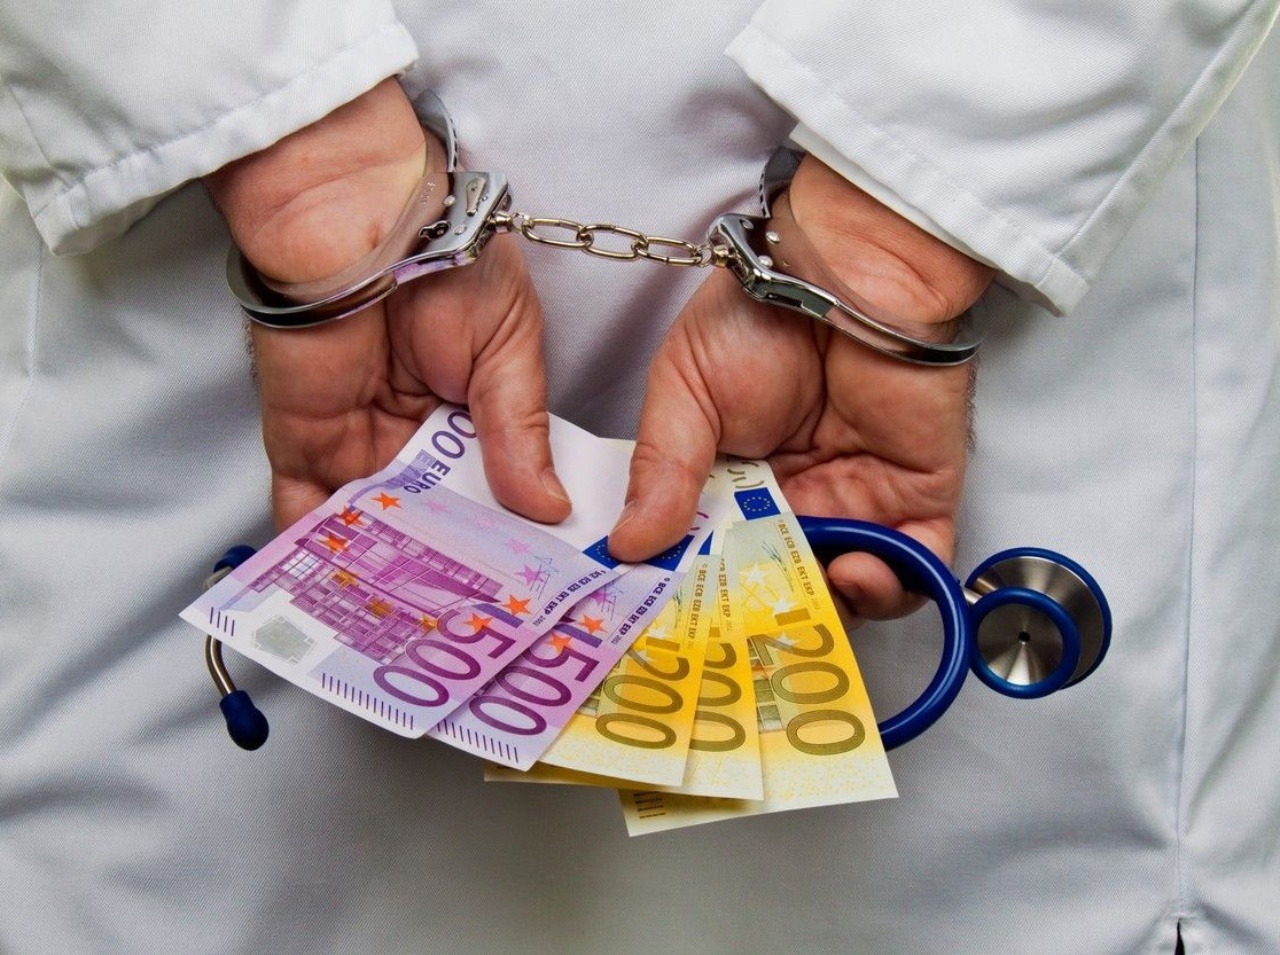 Neoficiálne platby v zdravotníctve sú medzi Slovákmi naďalej rozšírené!